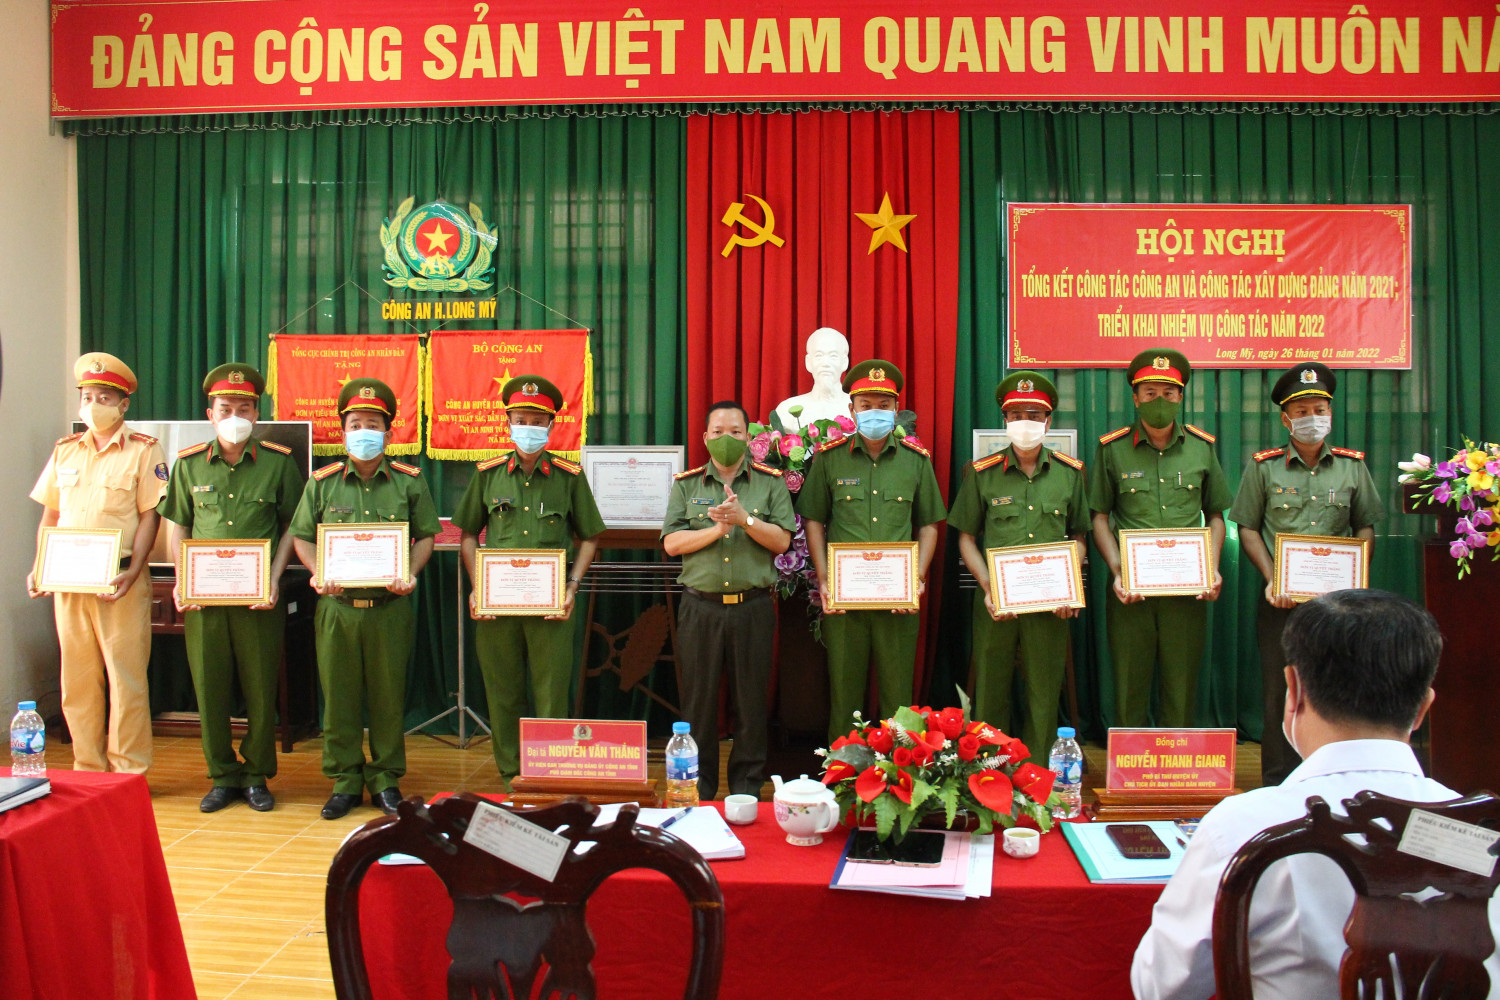 Đại tá Nguyễn Văn Thắng, Phó Giám đốc Công an tỉnh trao Danh hiệu quyết thắng cho các tập thể có thành tích xuất sắc trong phong trào thi đua “Vì An ninh Tổ quốc” năm 2021